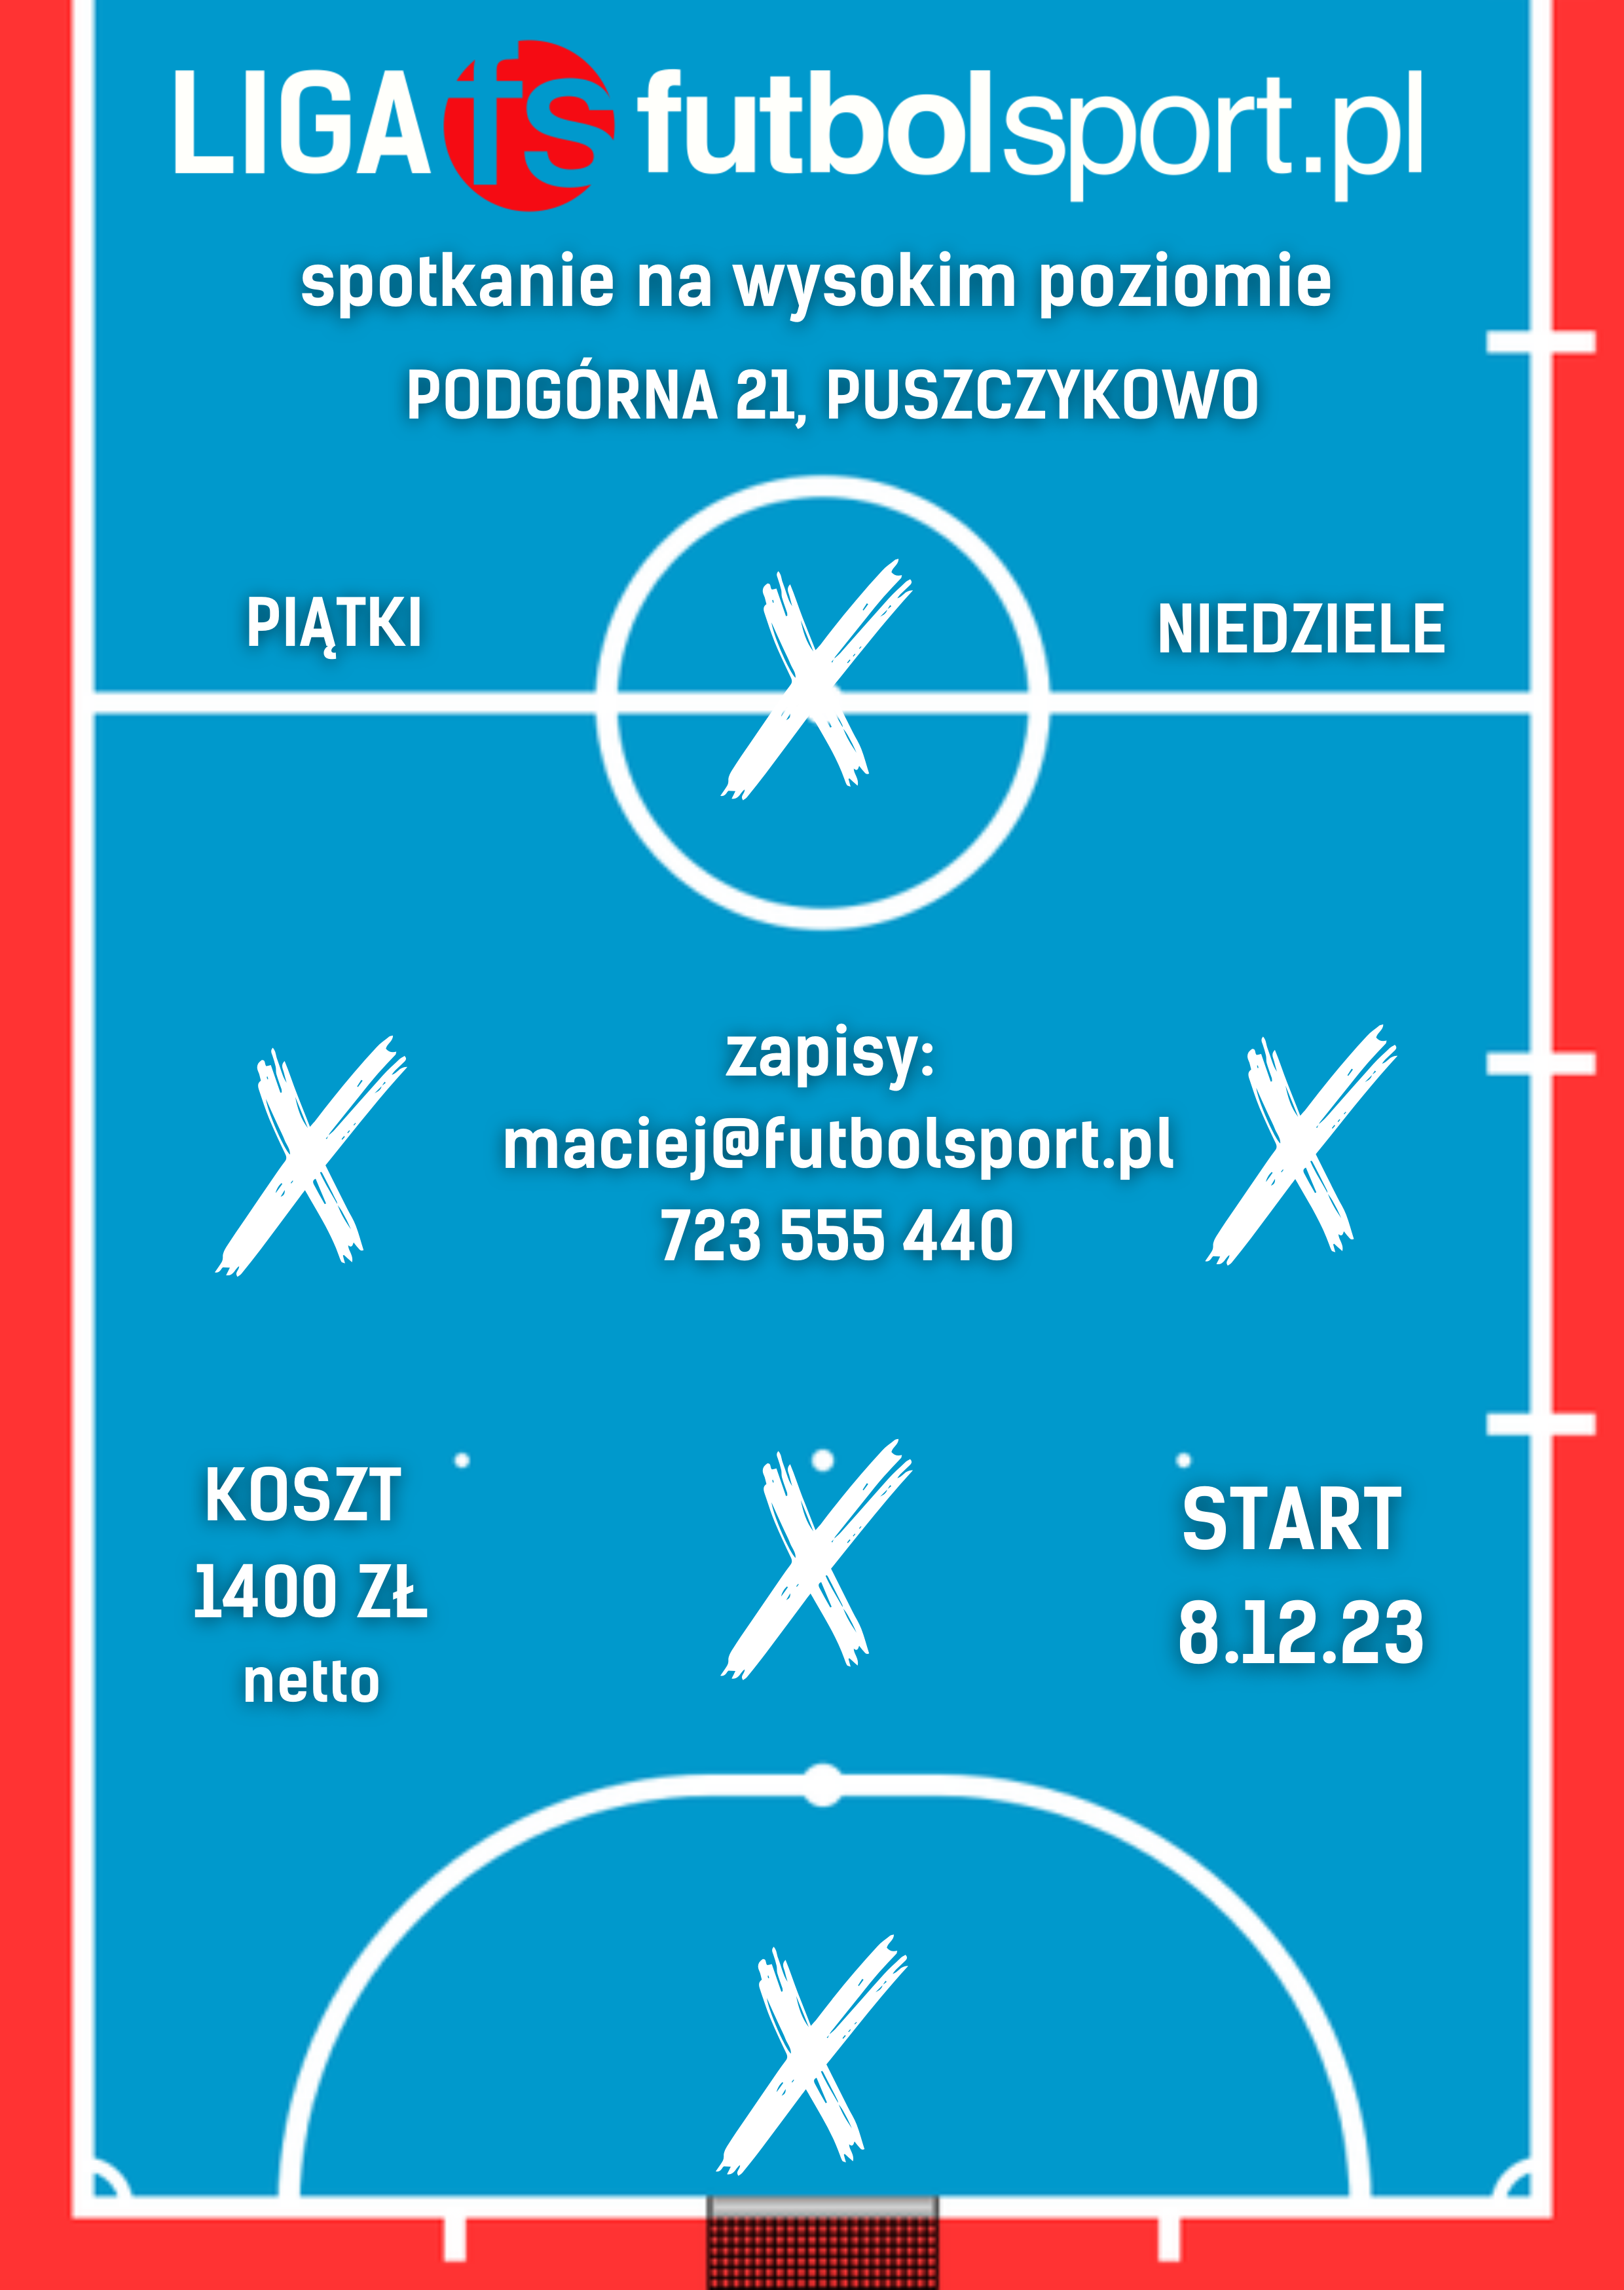 Startujemy z zapisami do halowej ligi futbolsport.pl sezon Zima 2020/2021